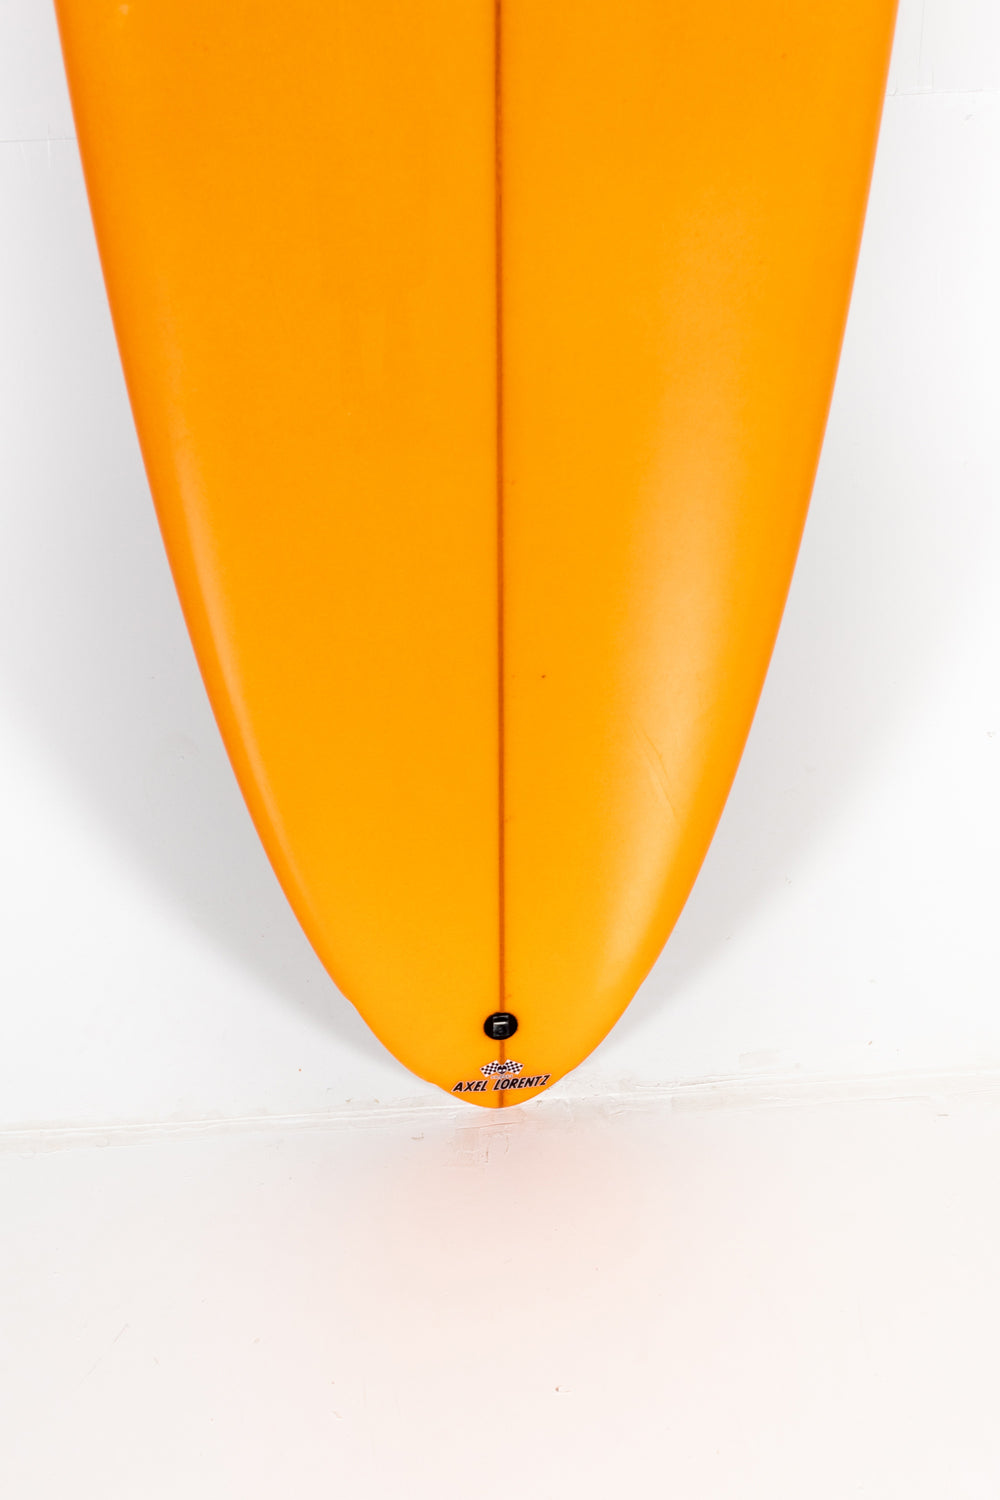 Pukas Surfboard - LADY TWIN 7'2